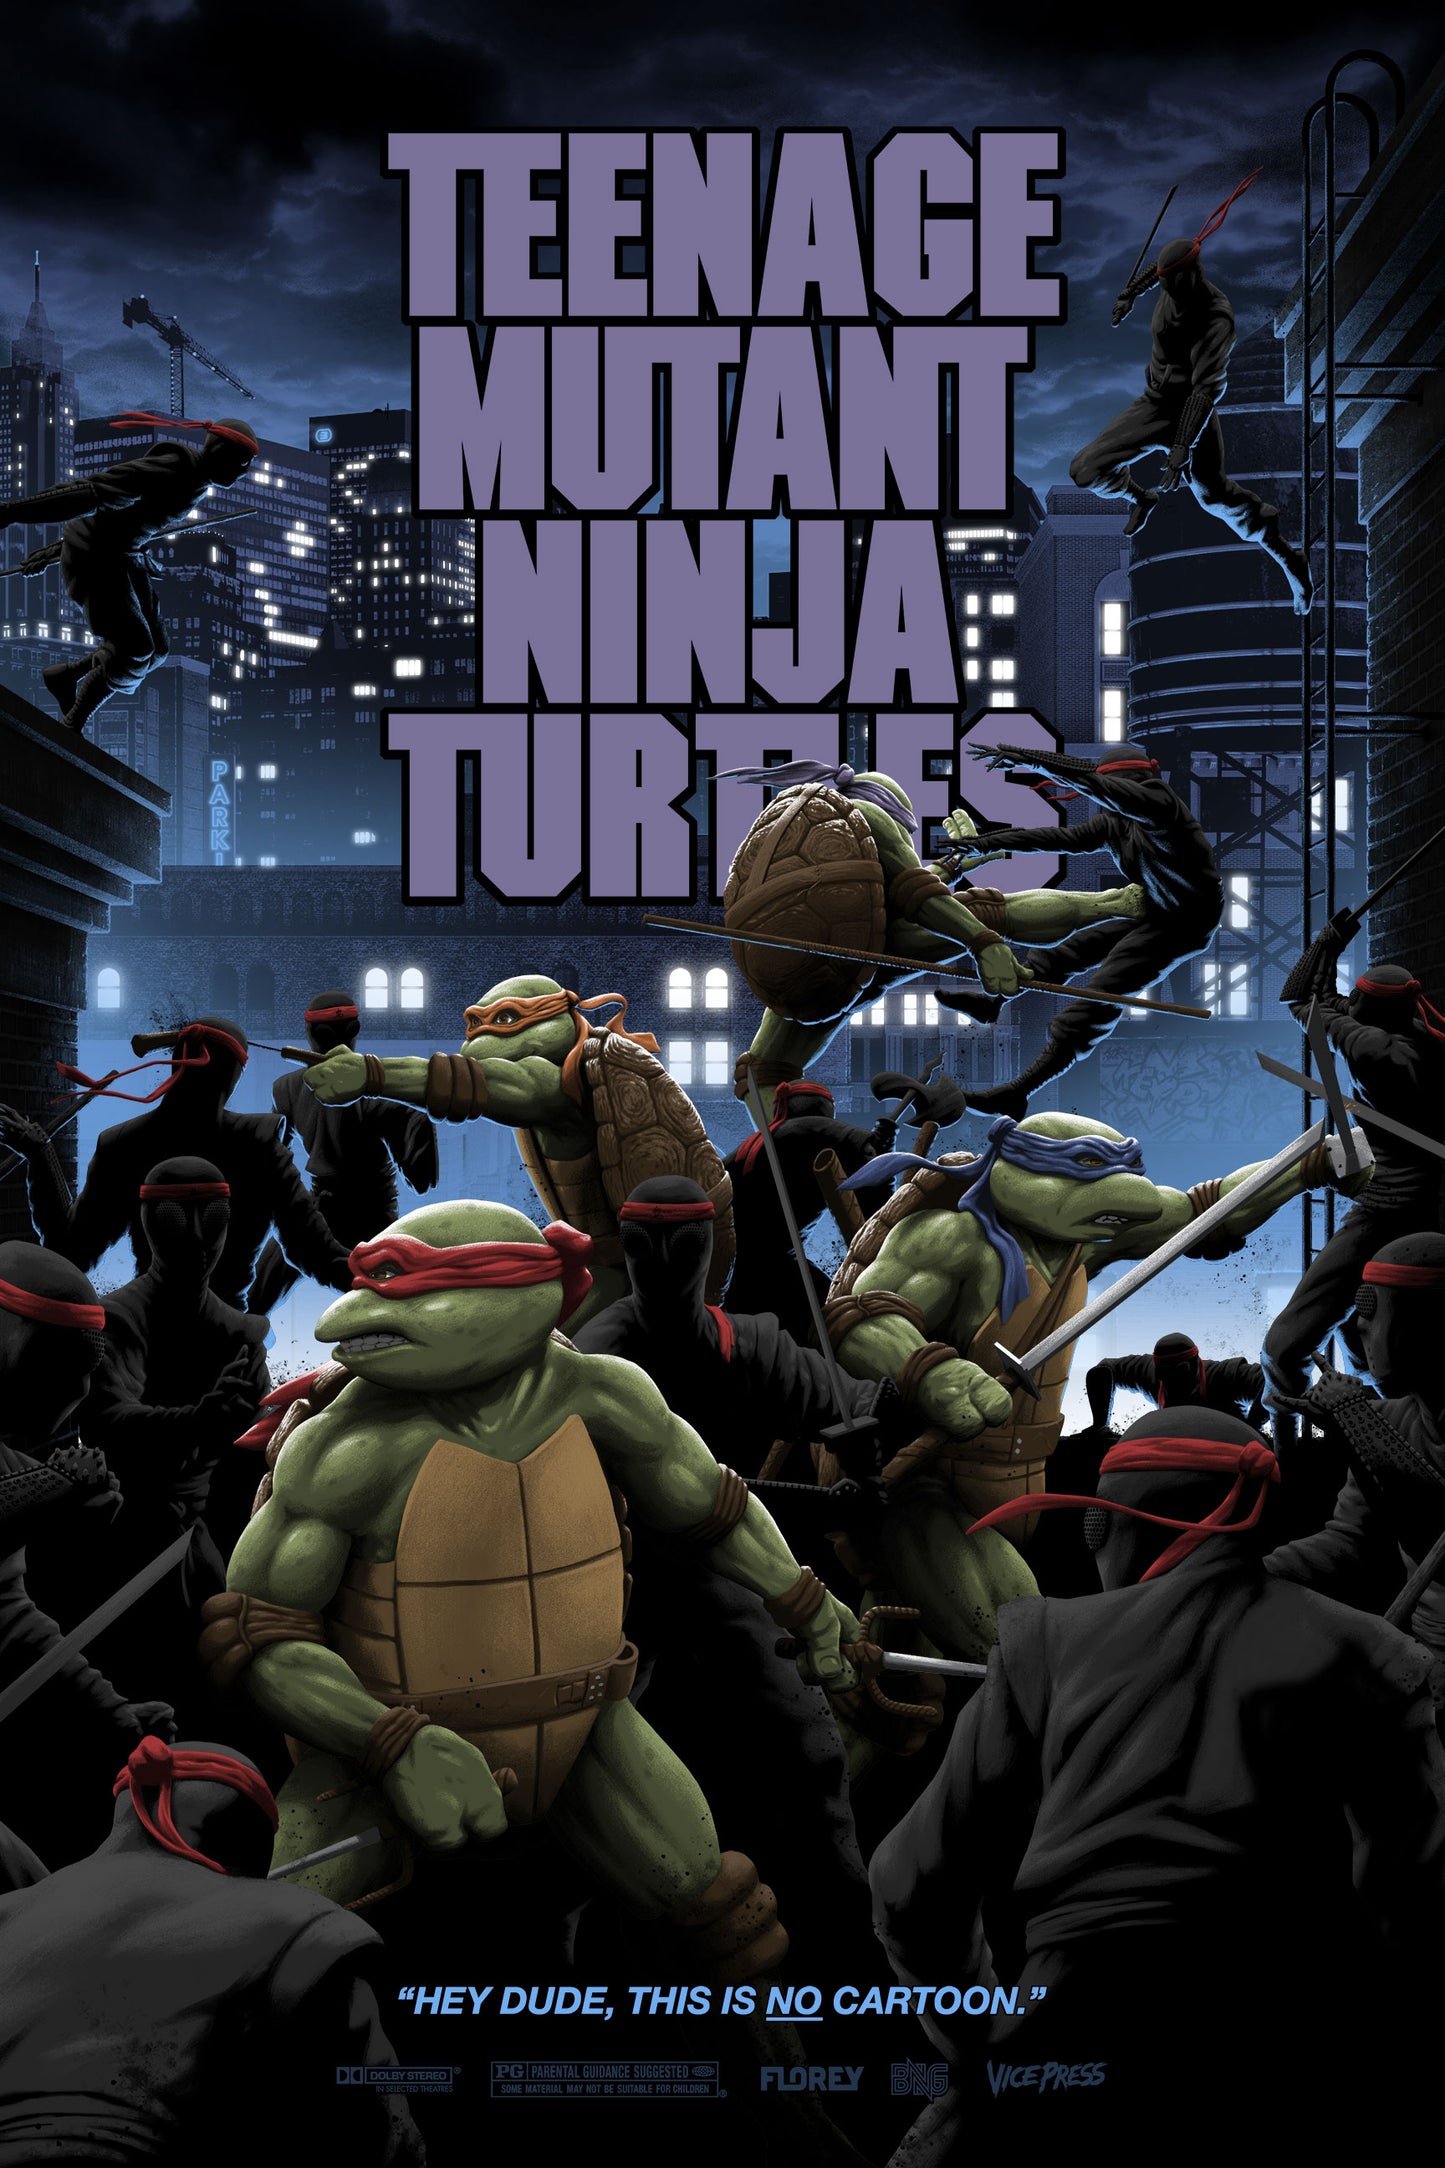 Florey "Teenage Mutant Ninja Turtles" Variant